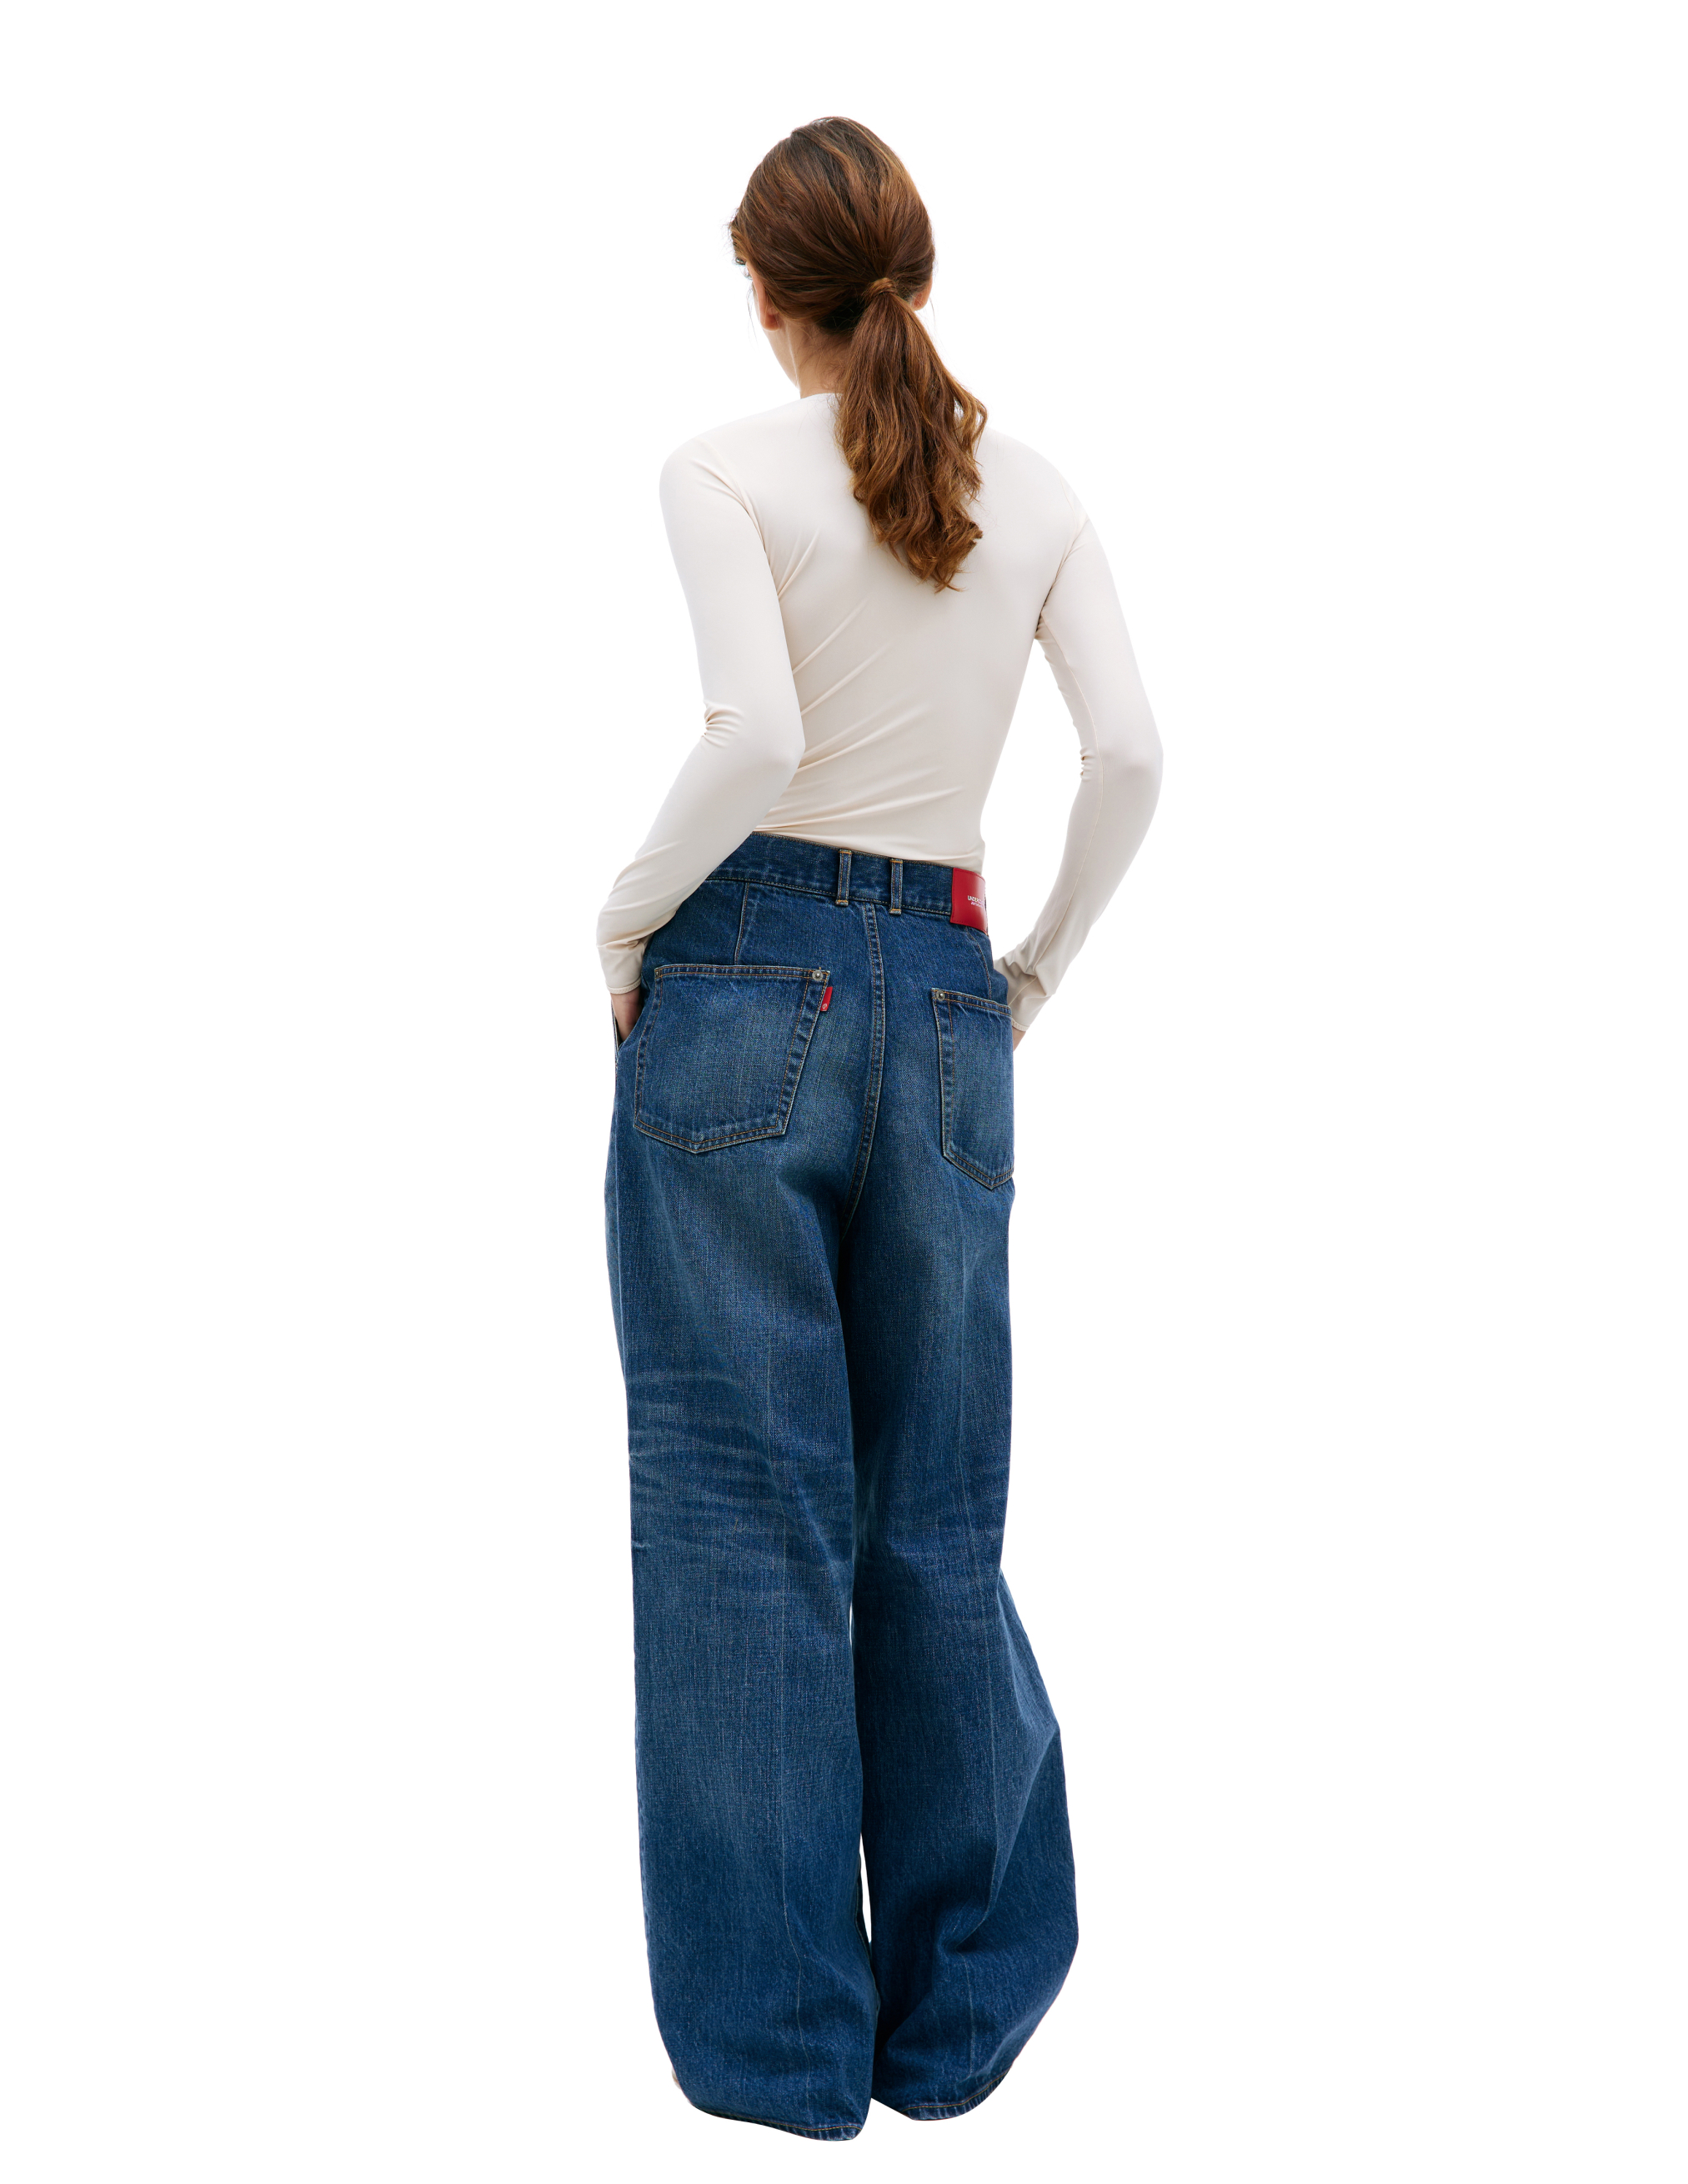 Широкие джинсы с защипами Undercover UC1C1504-2/INDIGO, размер 3 UC1C1504-2/INDIGO - фото 3